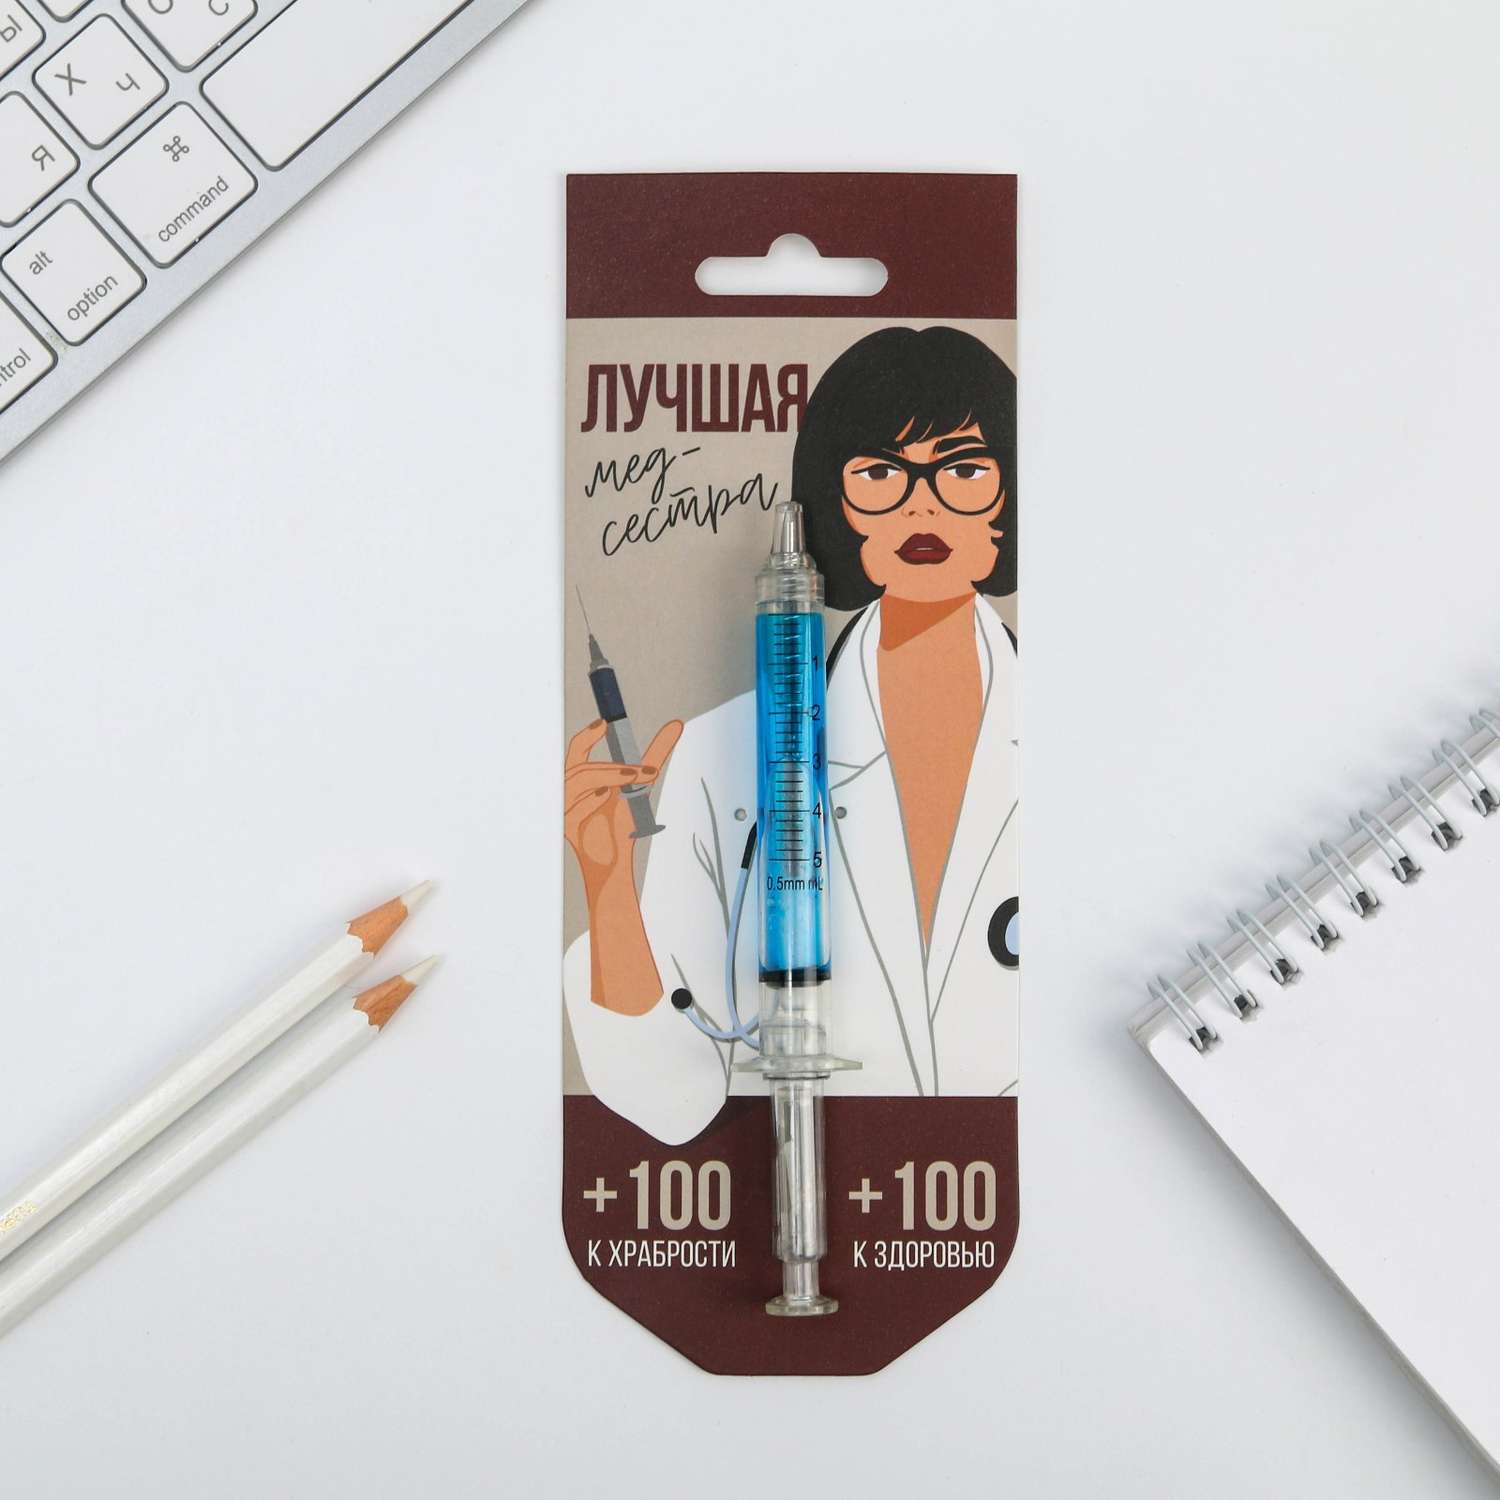 Ручка -шприц ArtFox шприц «Лучшая медсестра» на подложке - фото 1